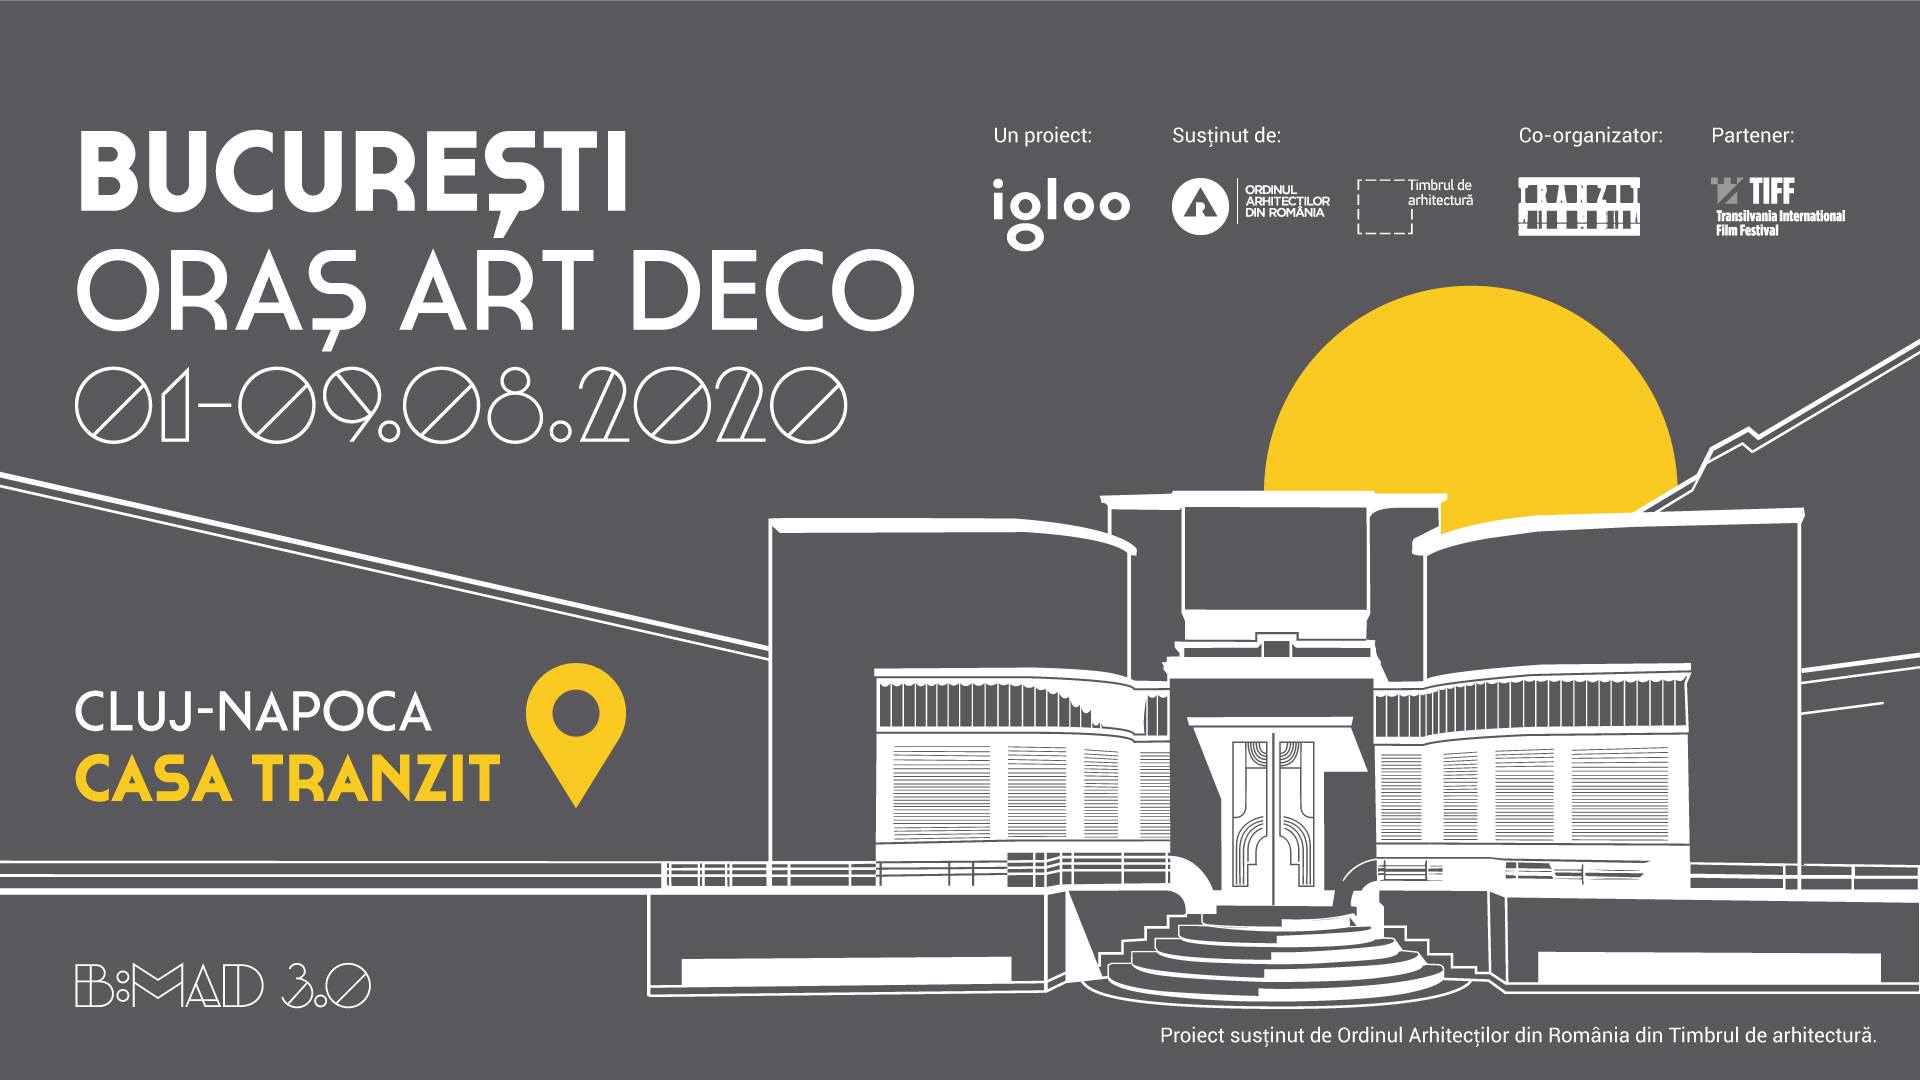 Expoziția itinerantă B:MAD 3.0 - București - Oraș Art Deco